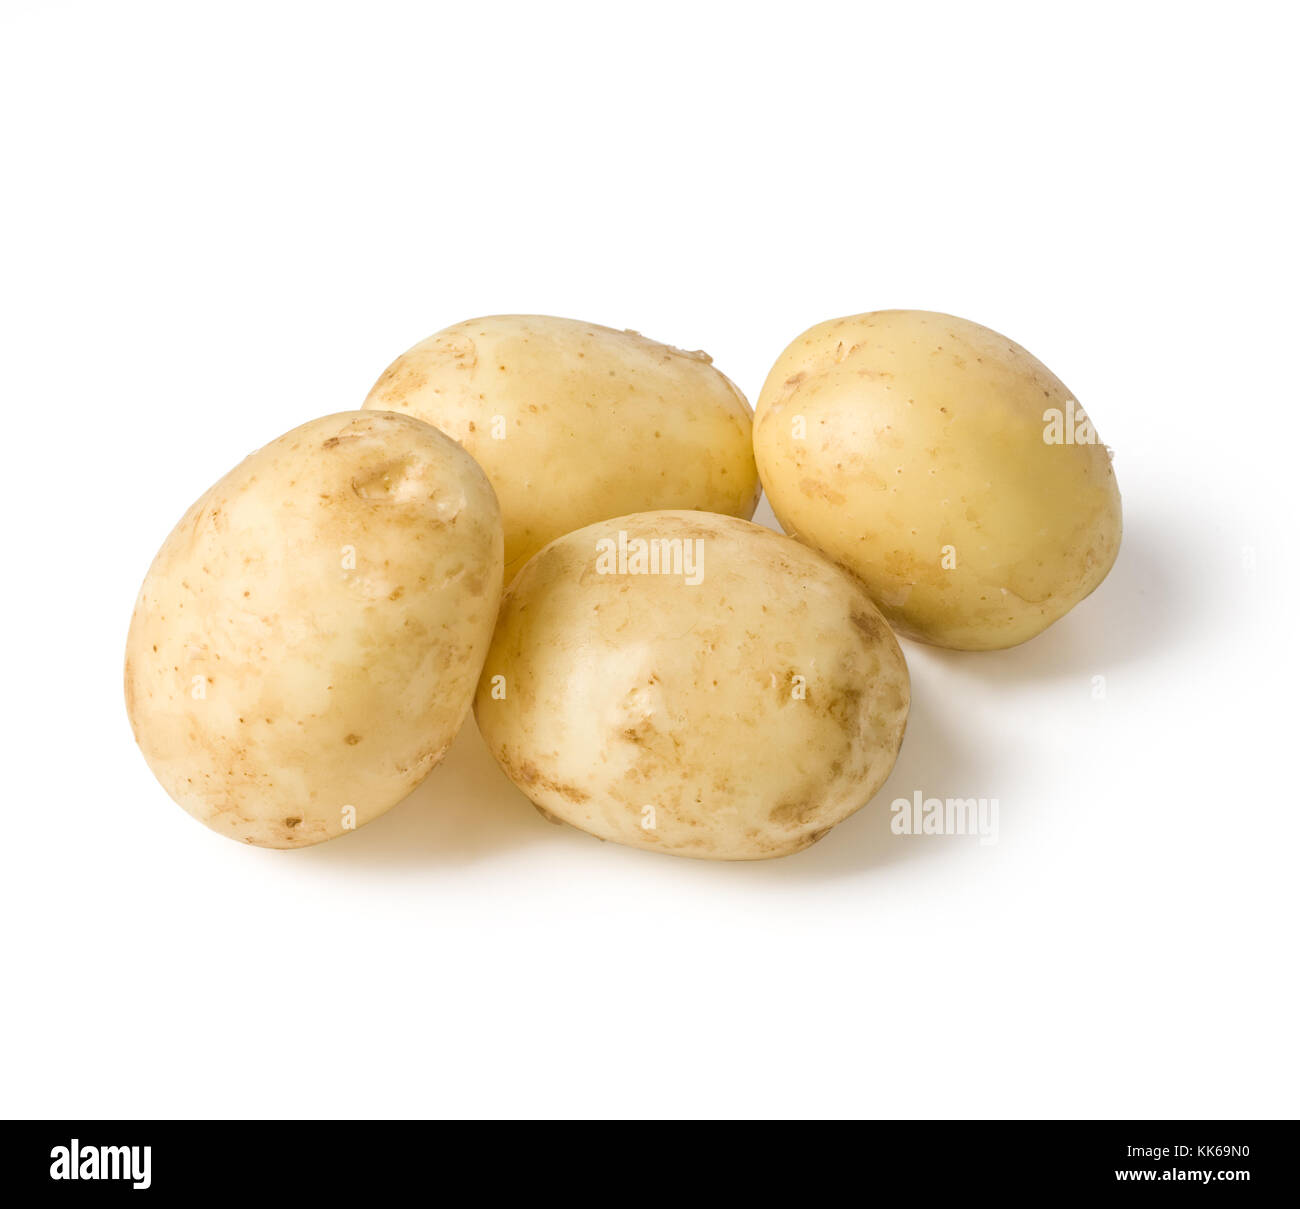 New potato isolated on white background close up Stock Photo